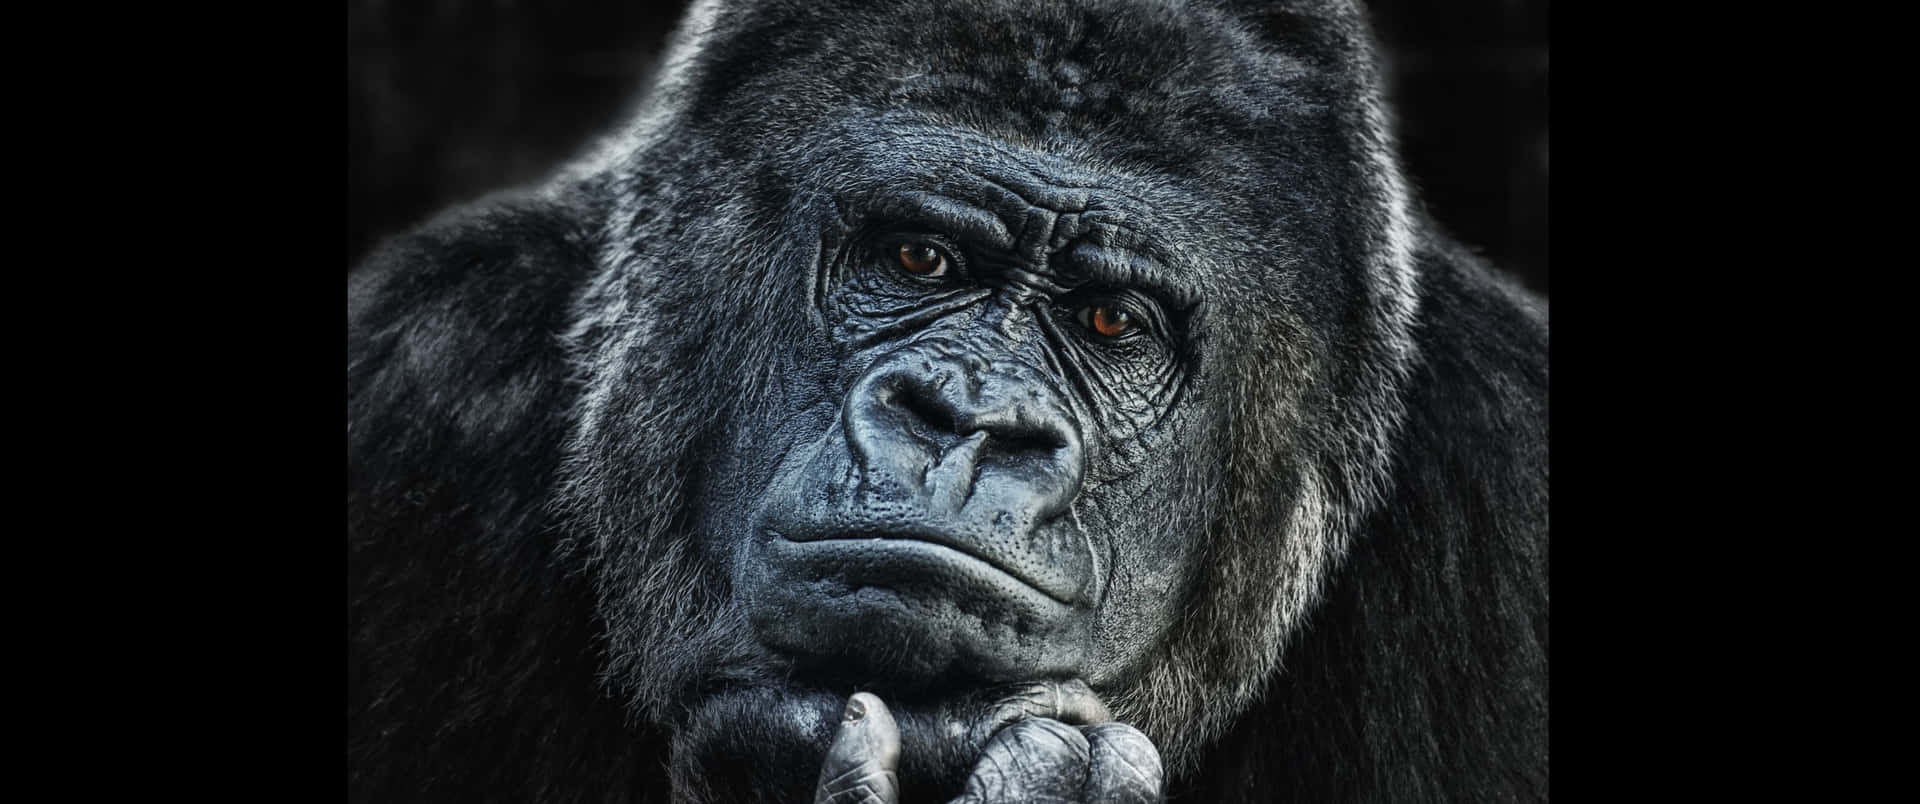 3440x1440phintergrundbild Eines Gorillas, Der Sich Das Kinn Hält.